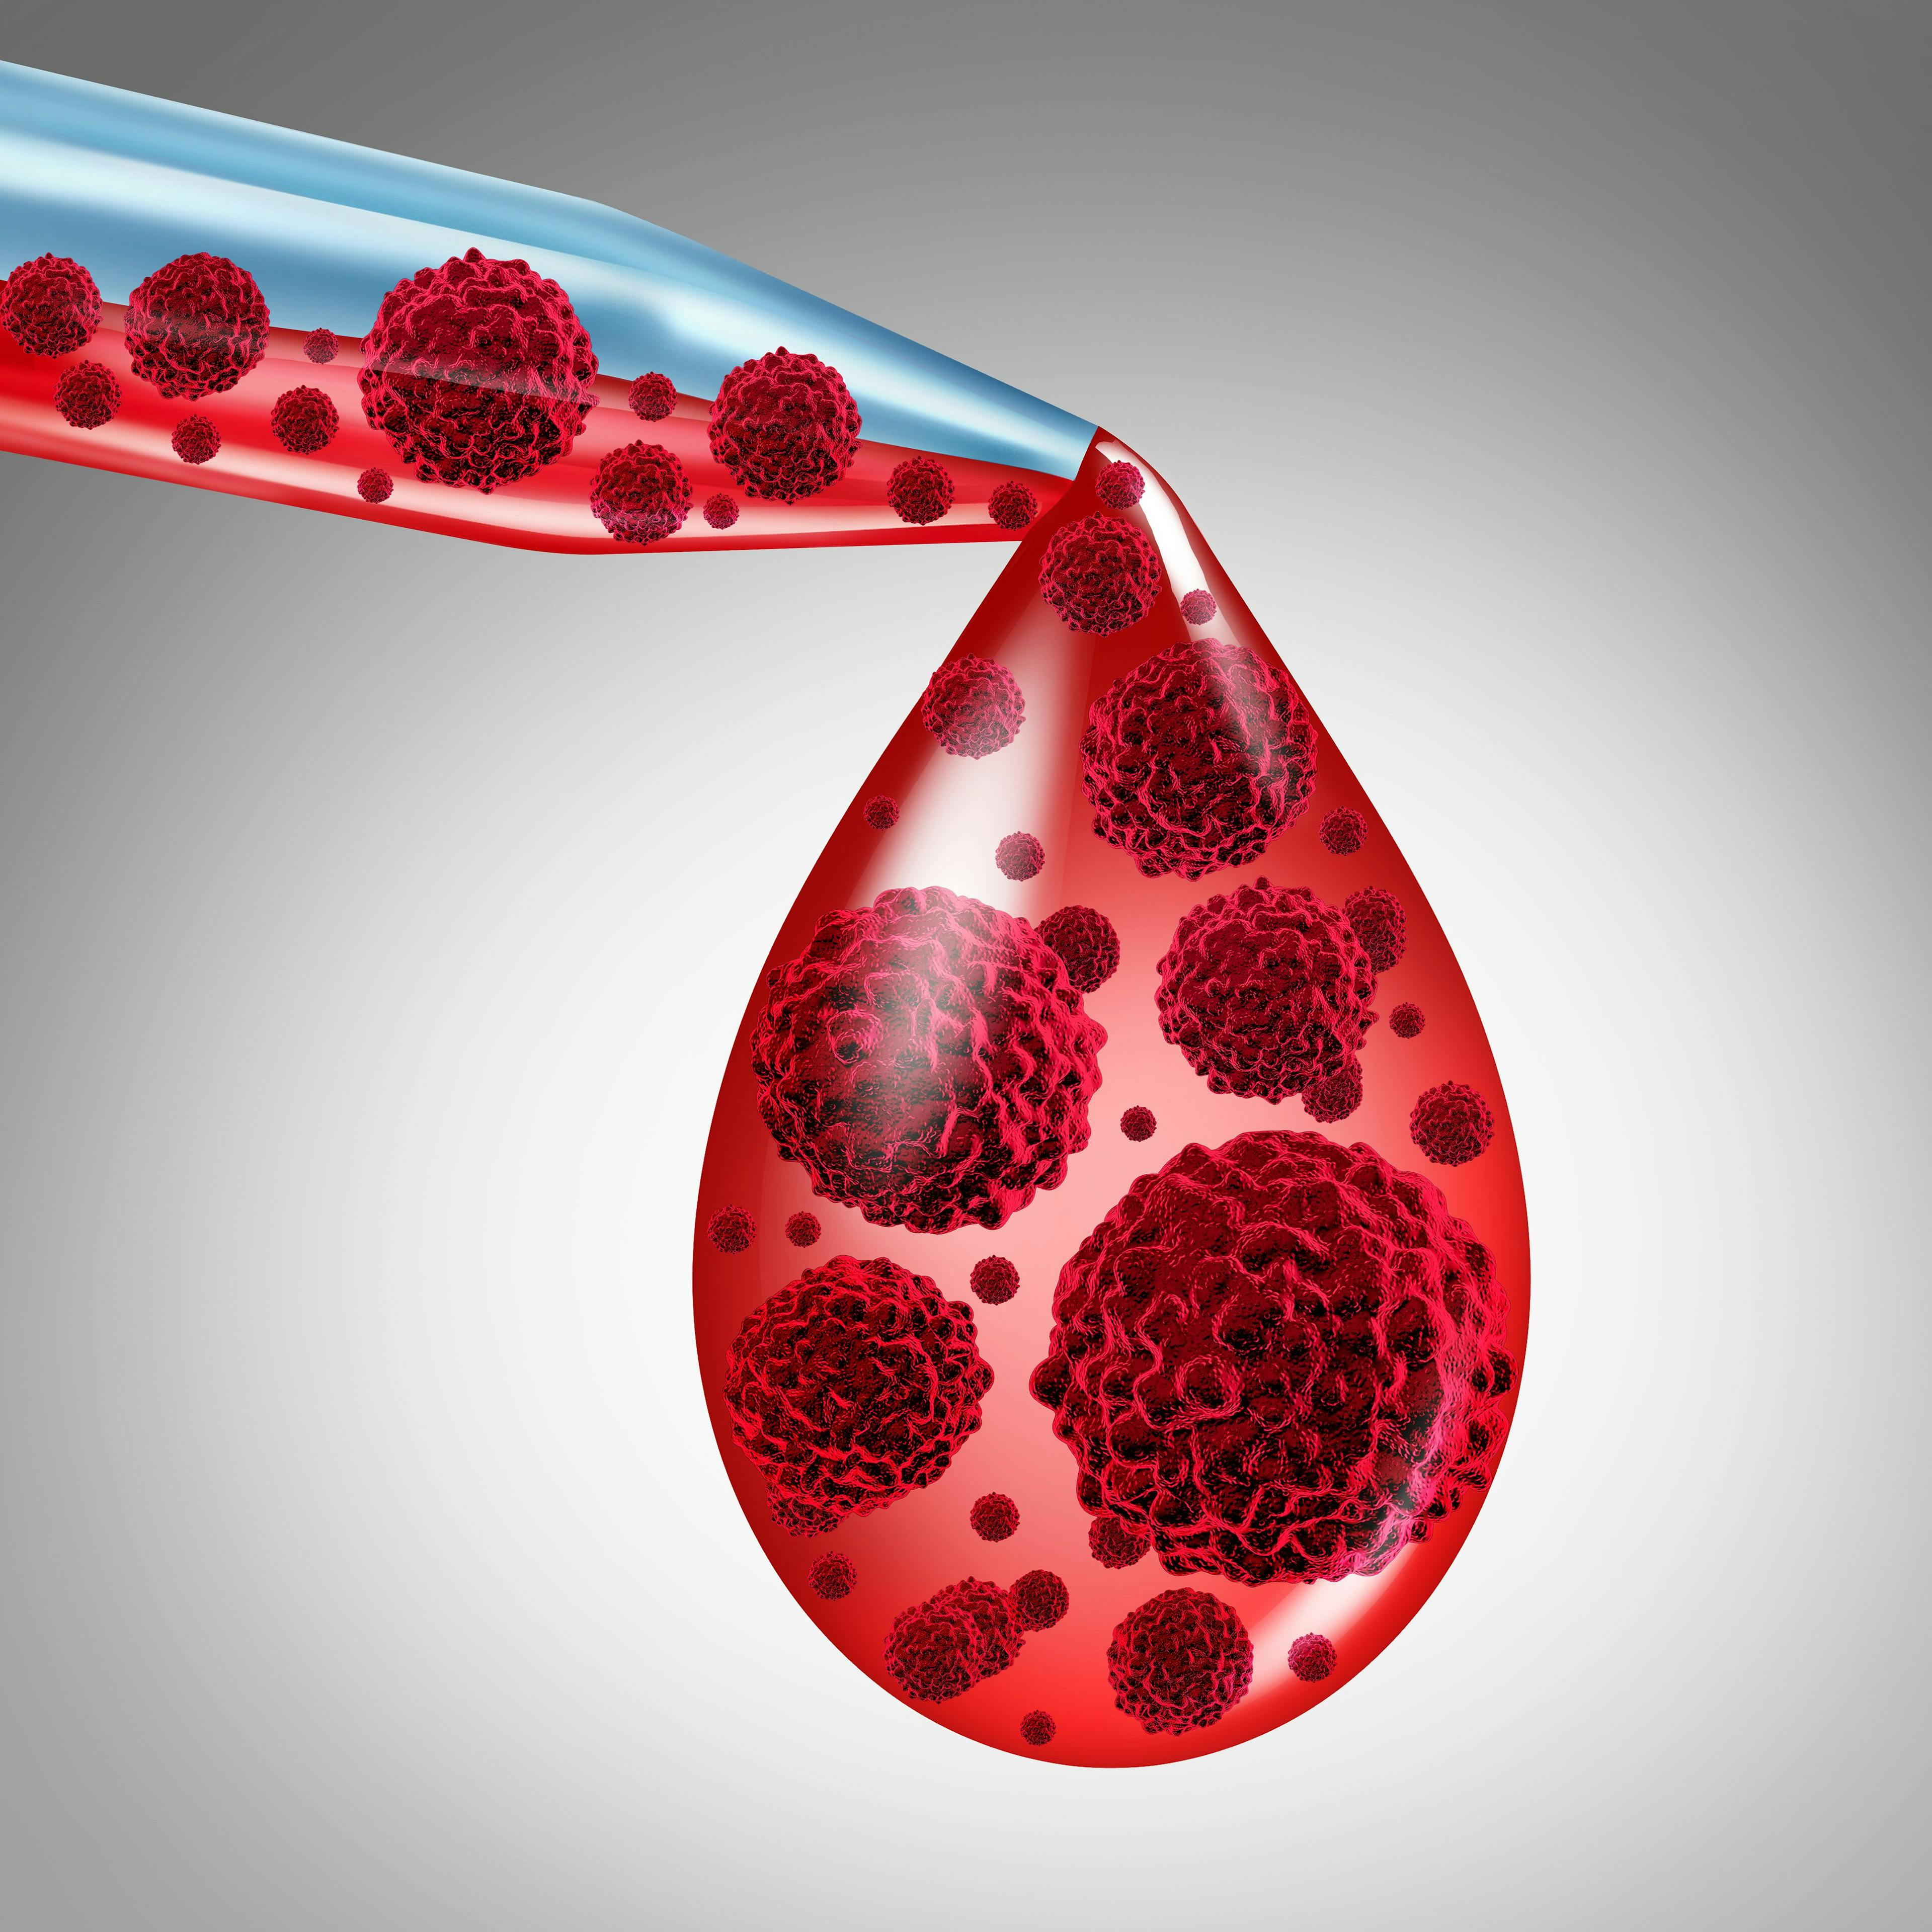 Illustration of blood droplet